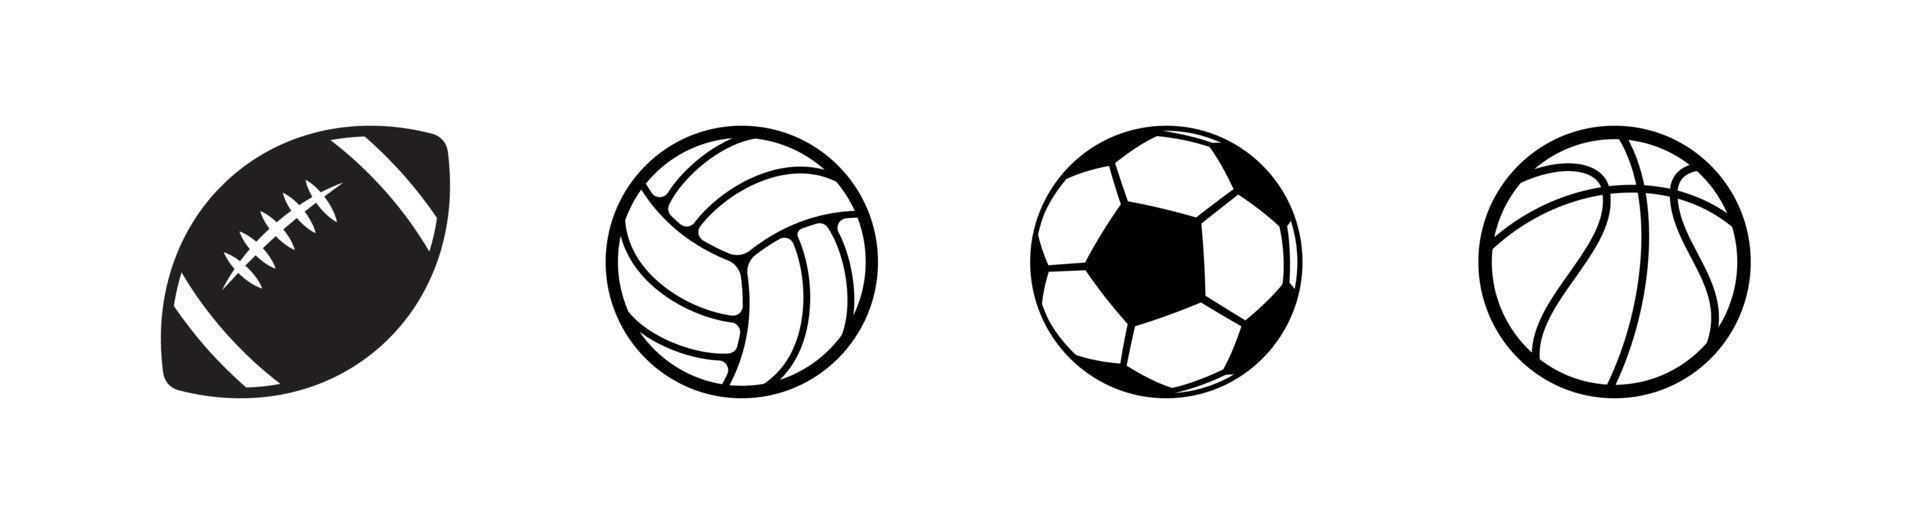 populärt designelement för sportspelbollsikon som är lämpligt för webbplatser, tryckt design eller app vektor